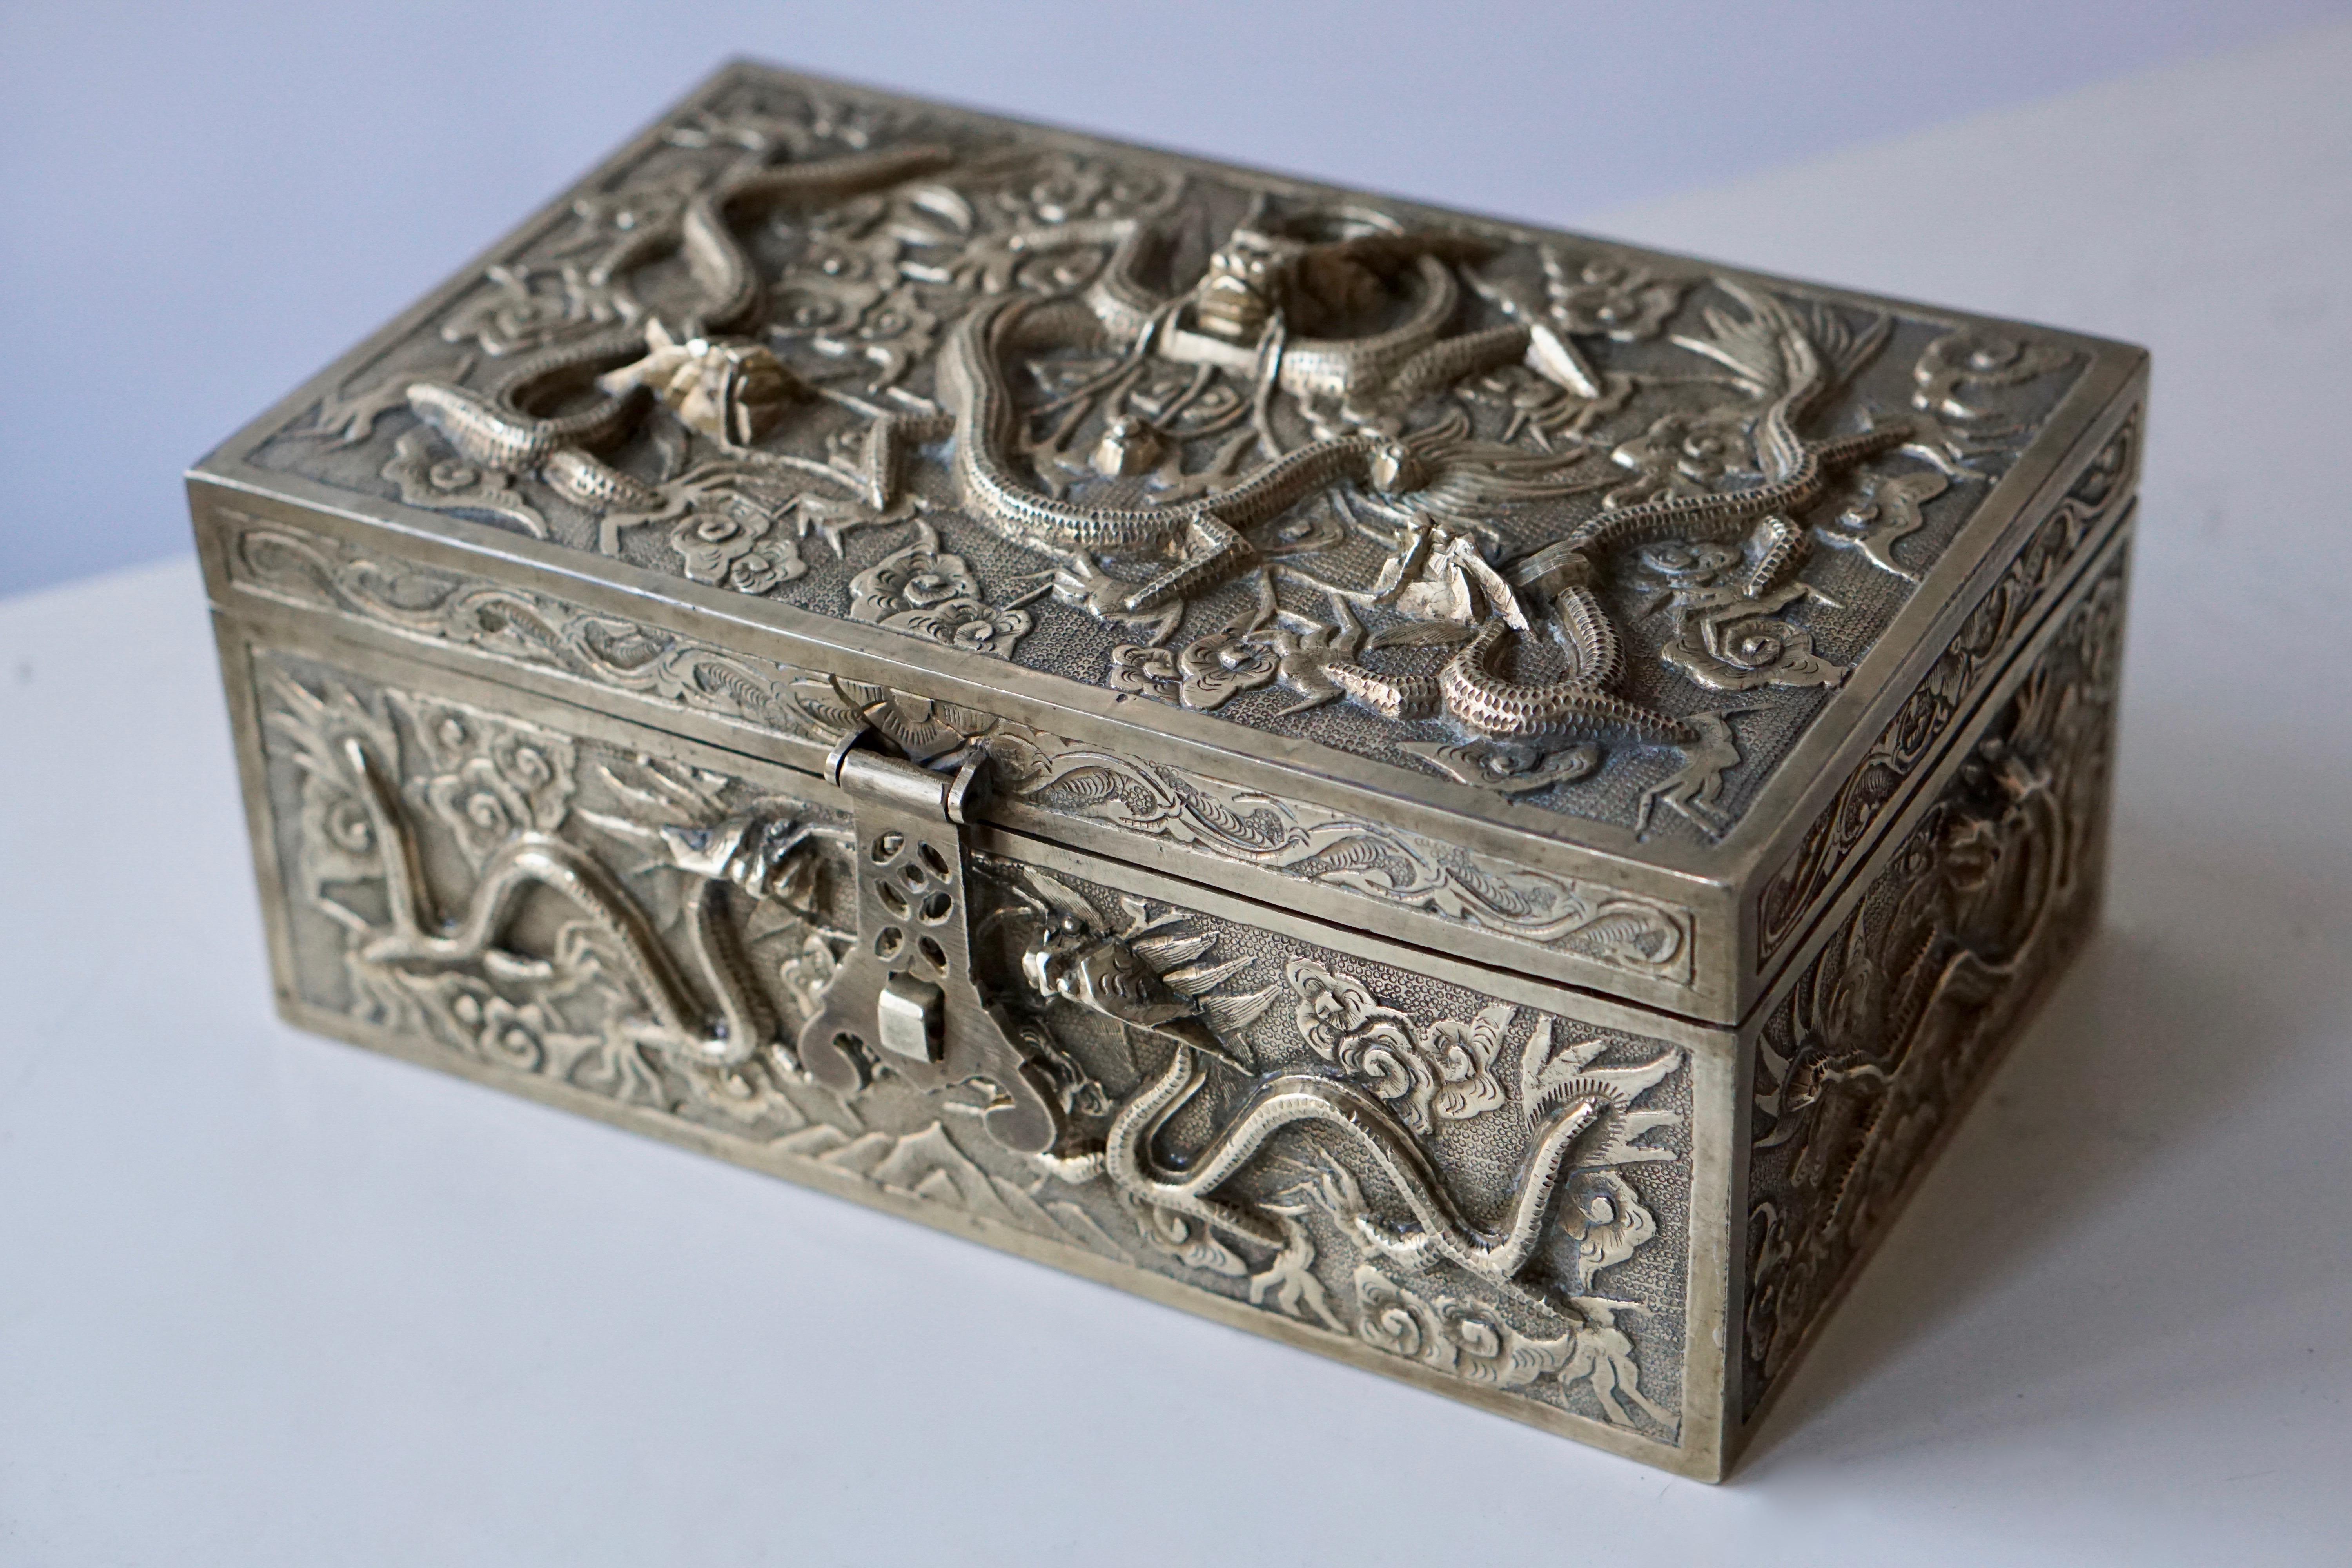 Une boîte à bijoux exceptionnelle, fine et impressionnante.
La surface de cette boîte est ornée de dragons et de fleurs.
La boîte est équipée d'un couvercle à charnière.
Mesures : Largeur 24 cm.
Profondeur 16 cm.
Hauteur 11 cm.
Poids 3 kg.